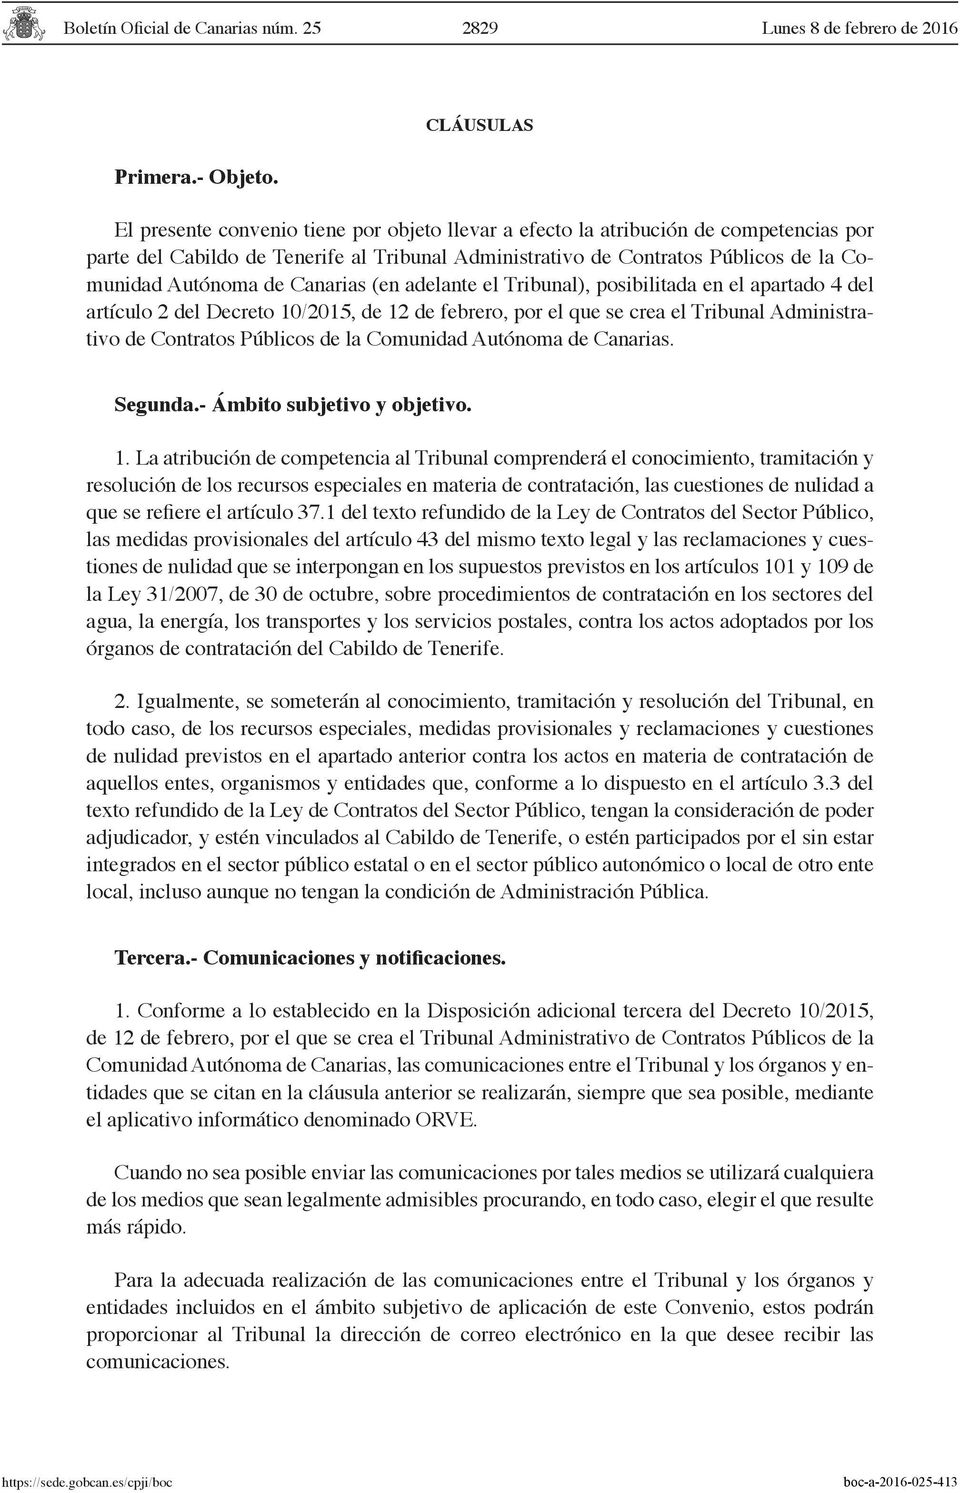 Canarias (en adelante el Tribunal), posibilitada en el apartado 4 del artículo 2 del Decreto 10/2015, de 12 de febrero, por el que se crea el Tribunal Administrativo de Contratos Públicos de la